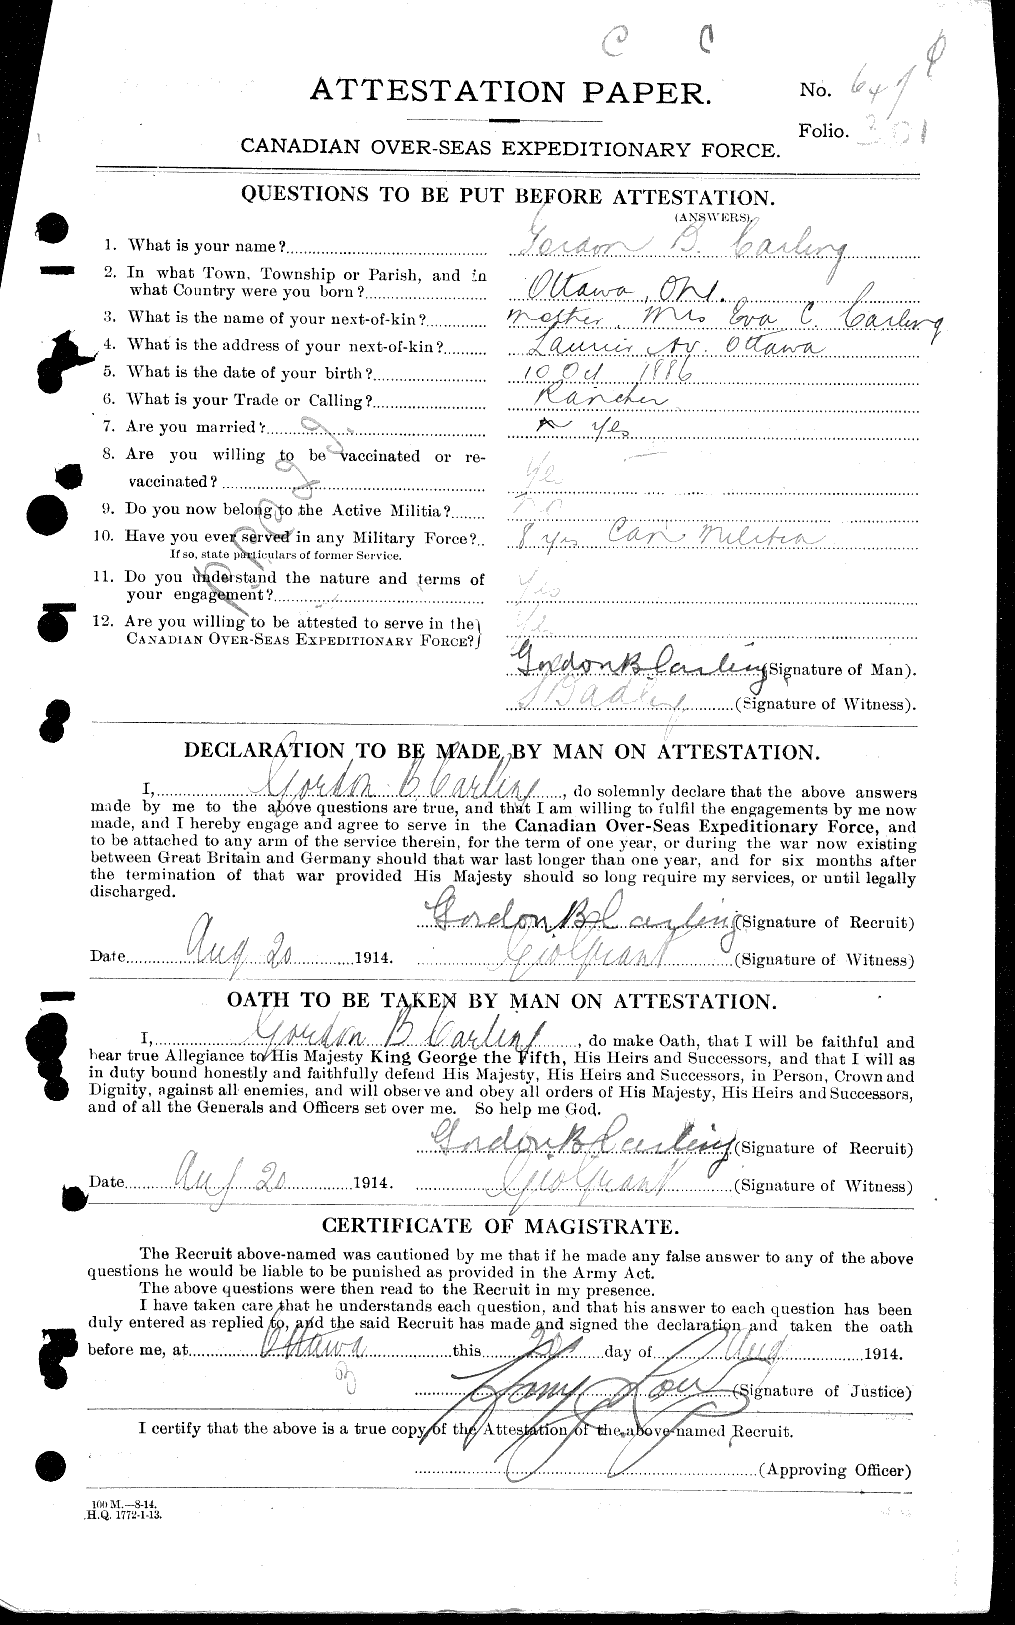 Dossiers du Personnel de la Première Guerre mondiale - CEC 009654a